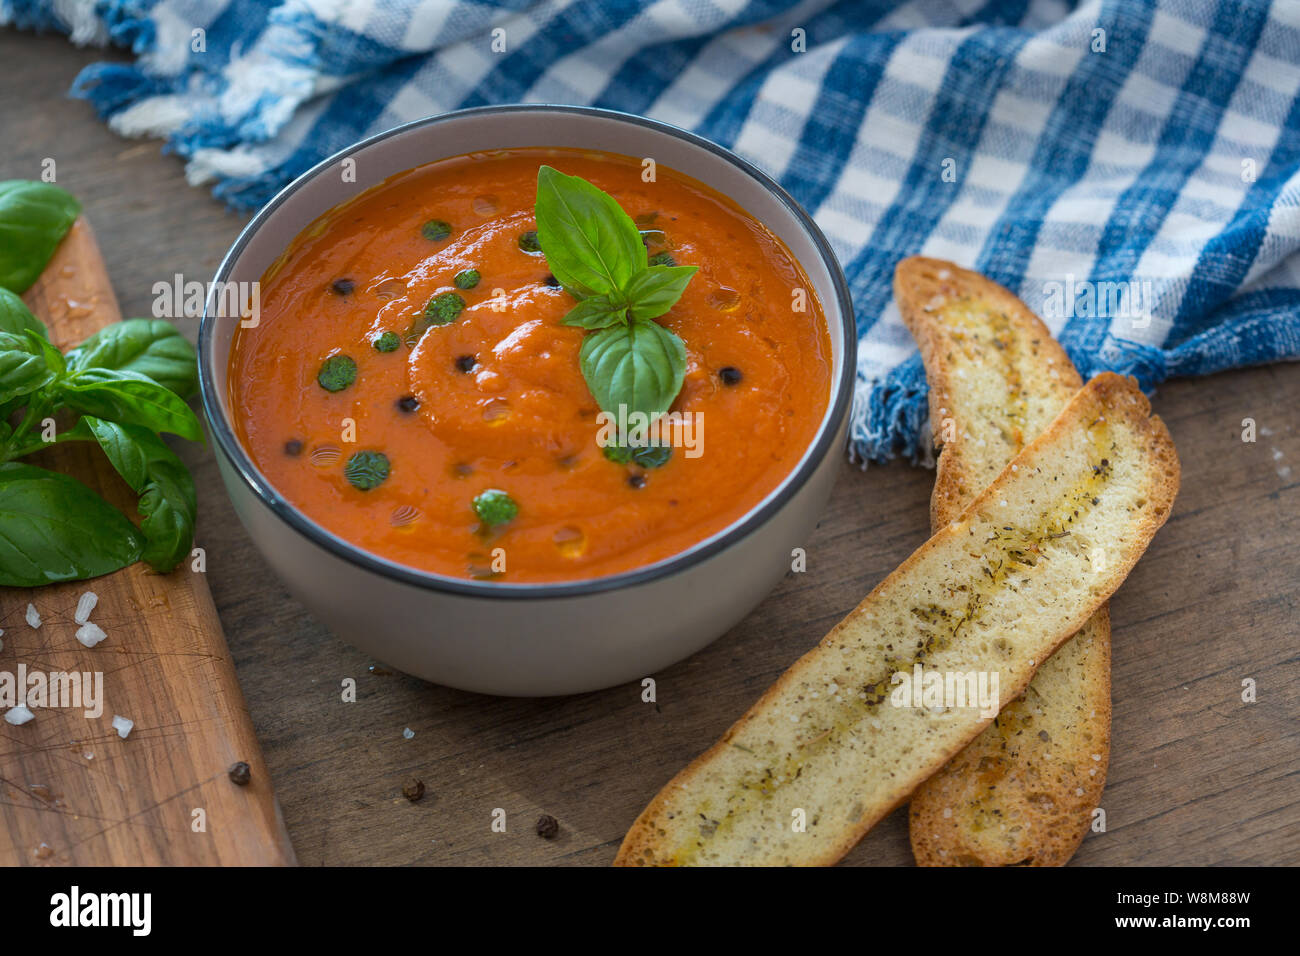 Un bol de soupe aux tomates fraîches en white Ceramic Bowl, garnie de croûtons, de basilic, de l'expérience et un filet d'huile d'olive et servi avec du pain croustillant. Banque D'Images